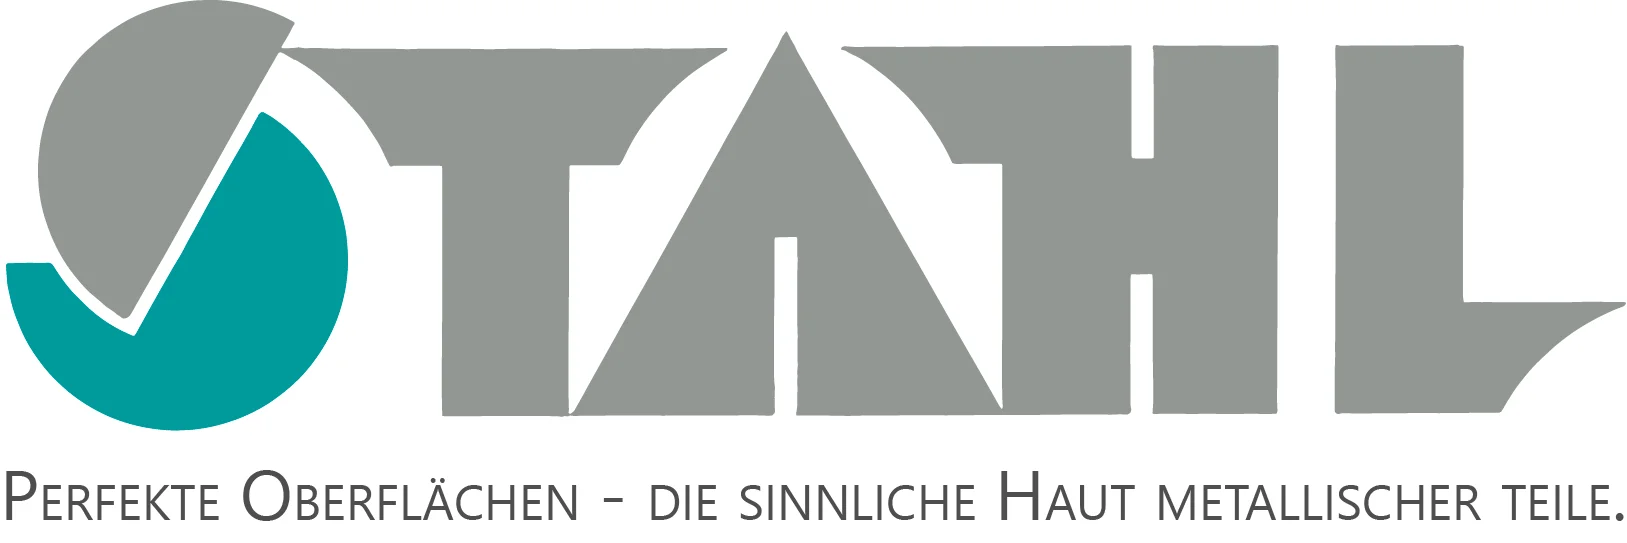 Stahl Oberflächentechnik GmbH